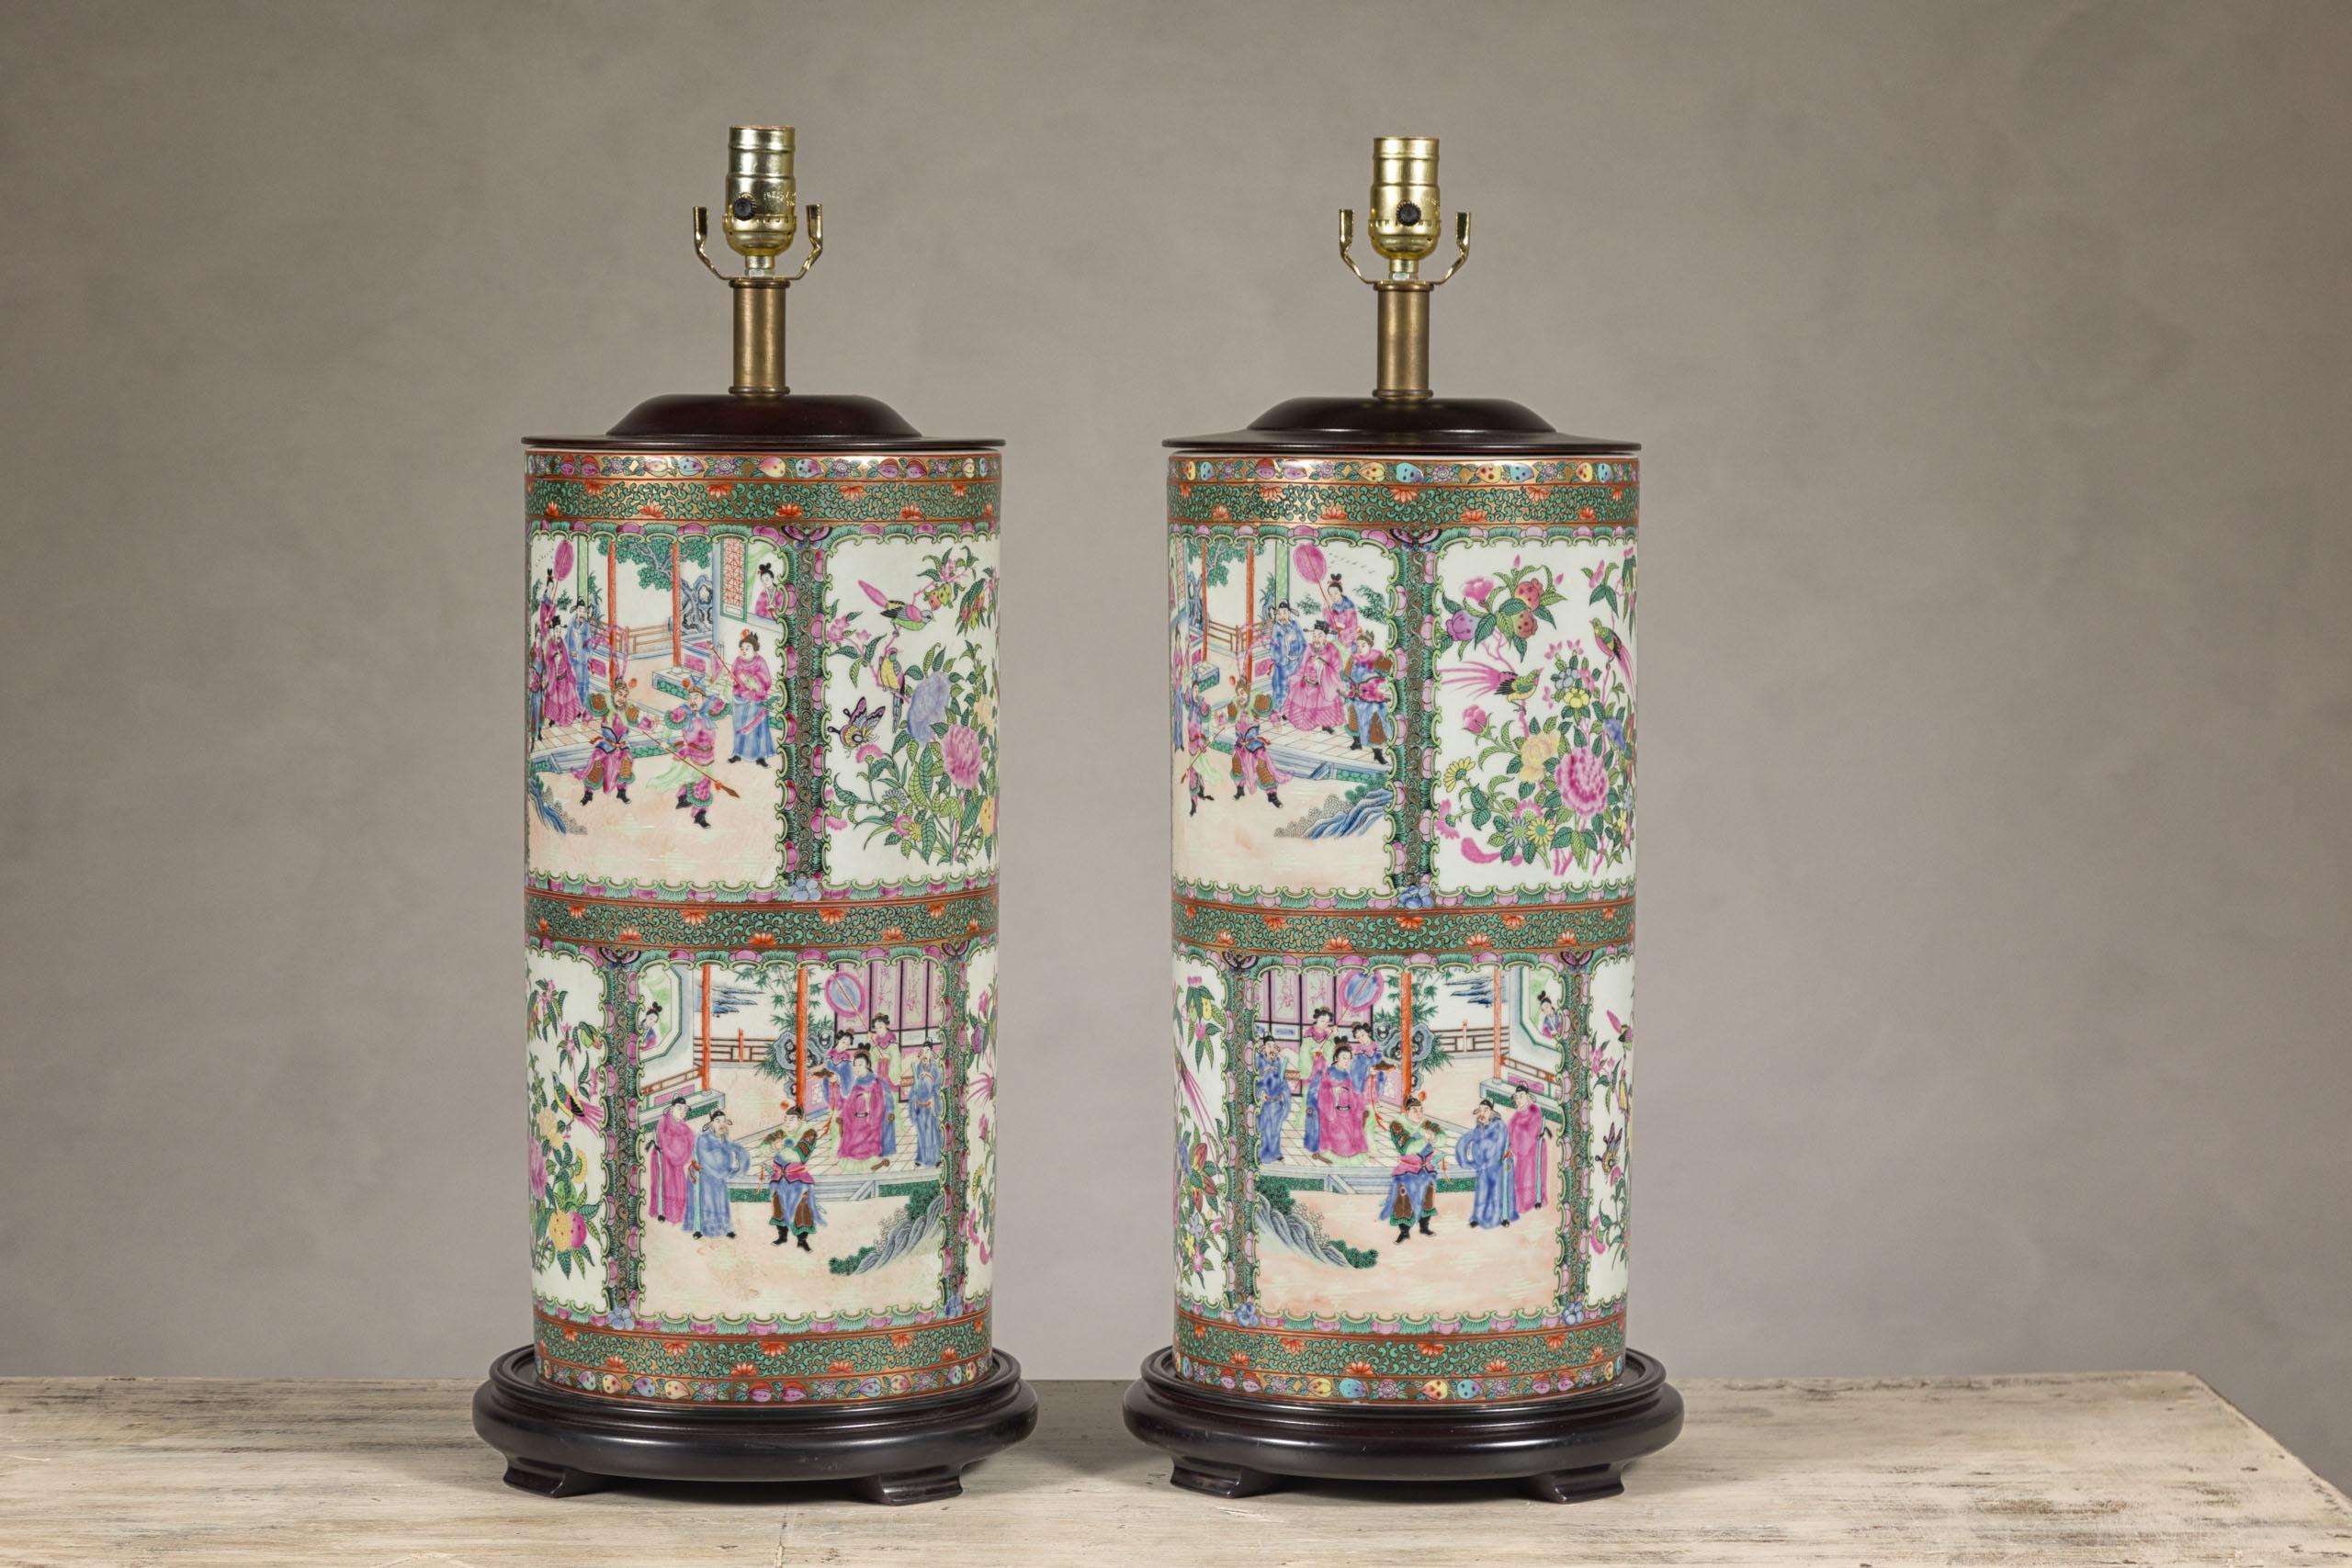 Paire de lampes de table chinoises vintage peintes à la main en médaillon rose représentant des scènes de cour, des oiseaux et des fleurs dans des panneaux verts, roses et blancs. Plongez dans l'histoire avec cette paire de lampes de table à